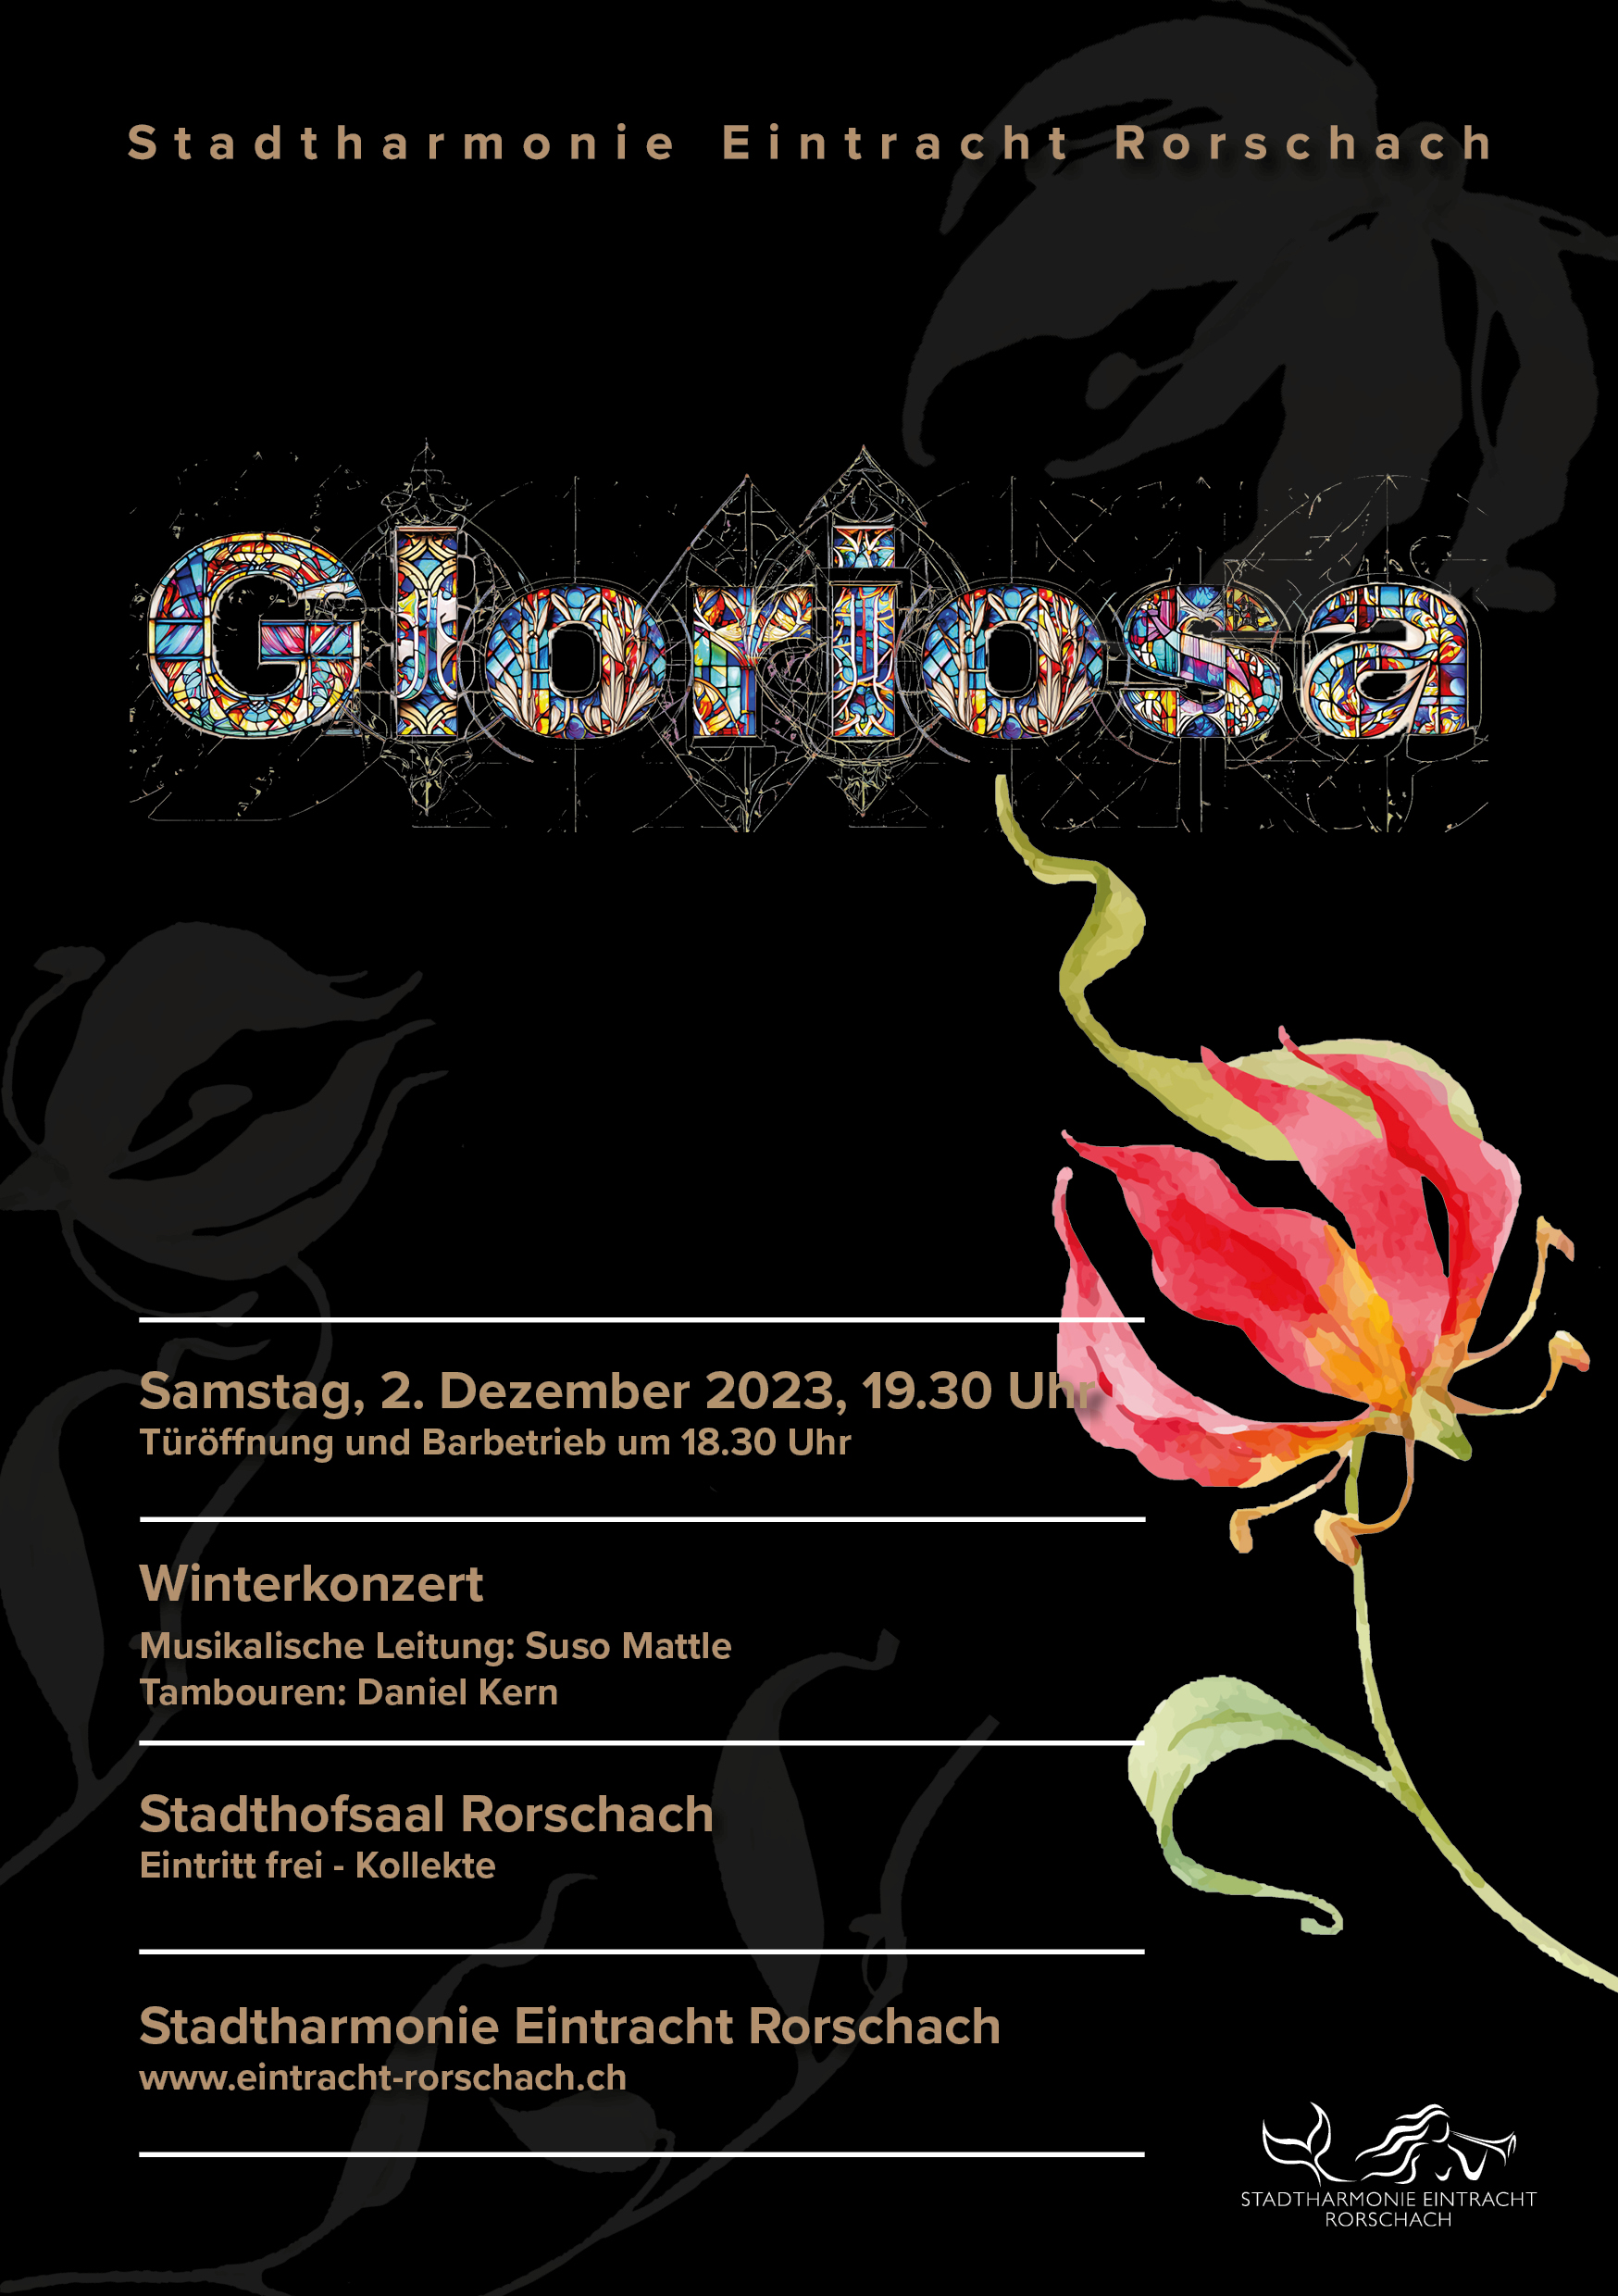 Deckblatt des Flyers des Winterkonzertes der Stadtharmonie Eintracht Rorschach